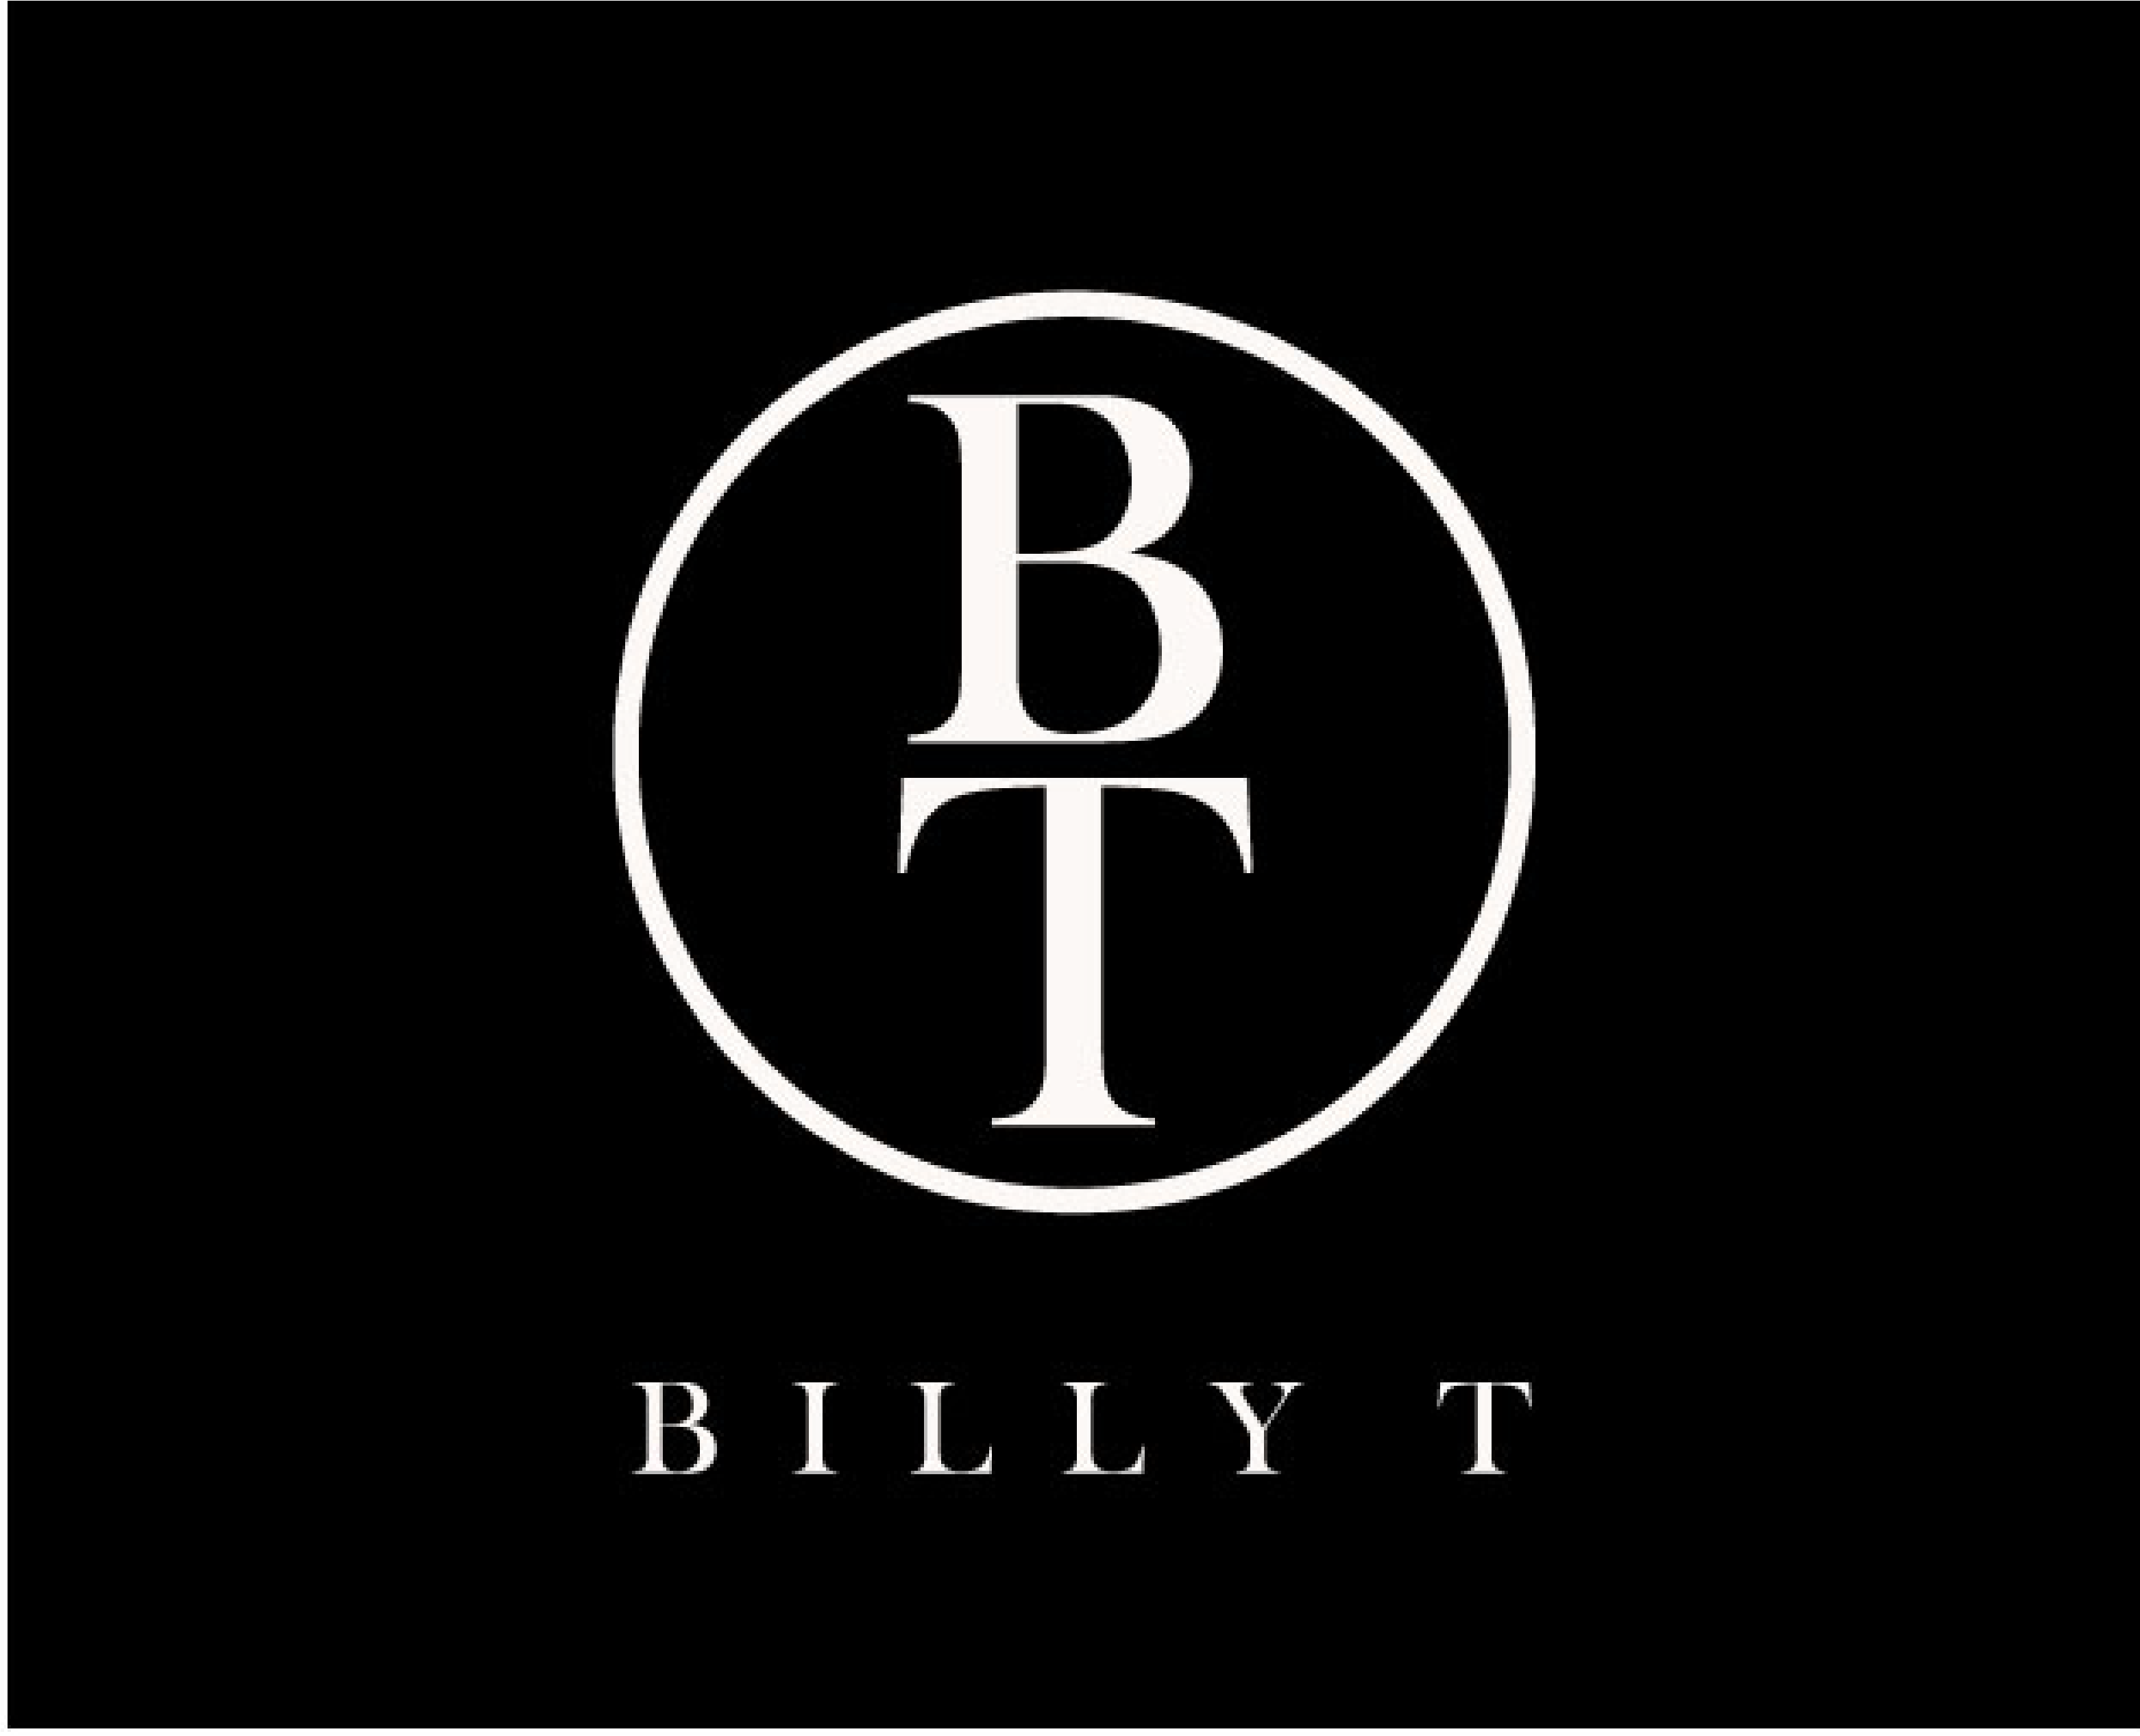 Billy T